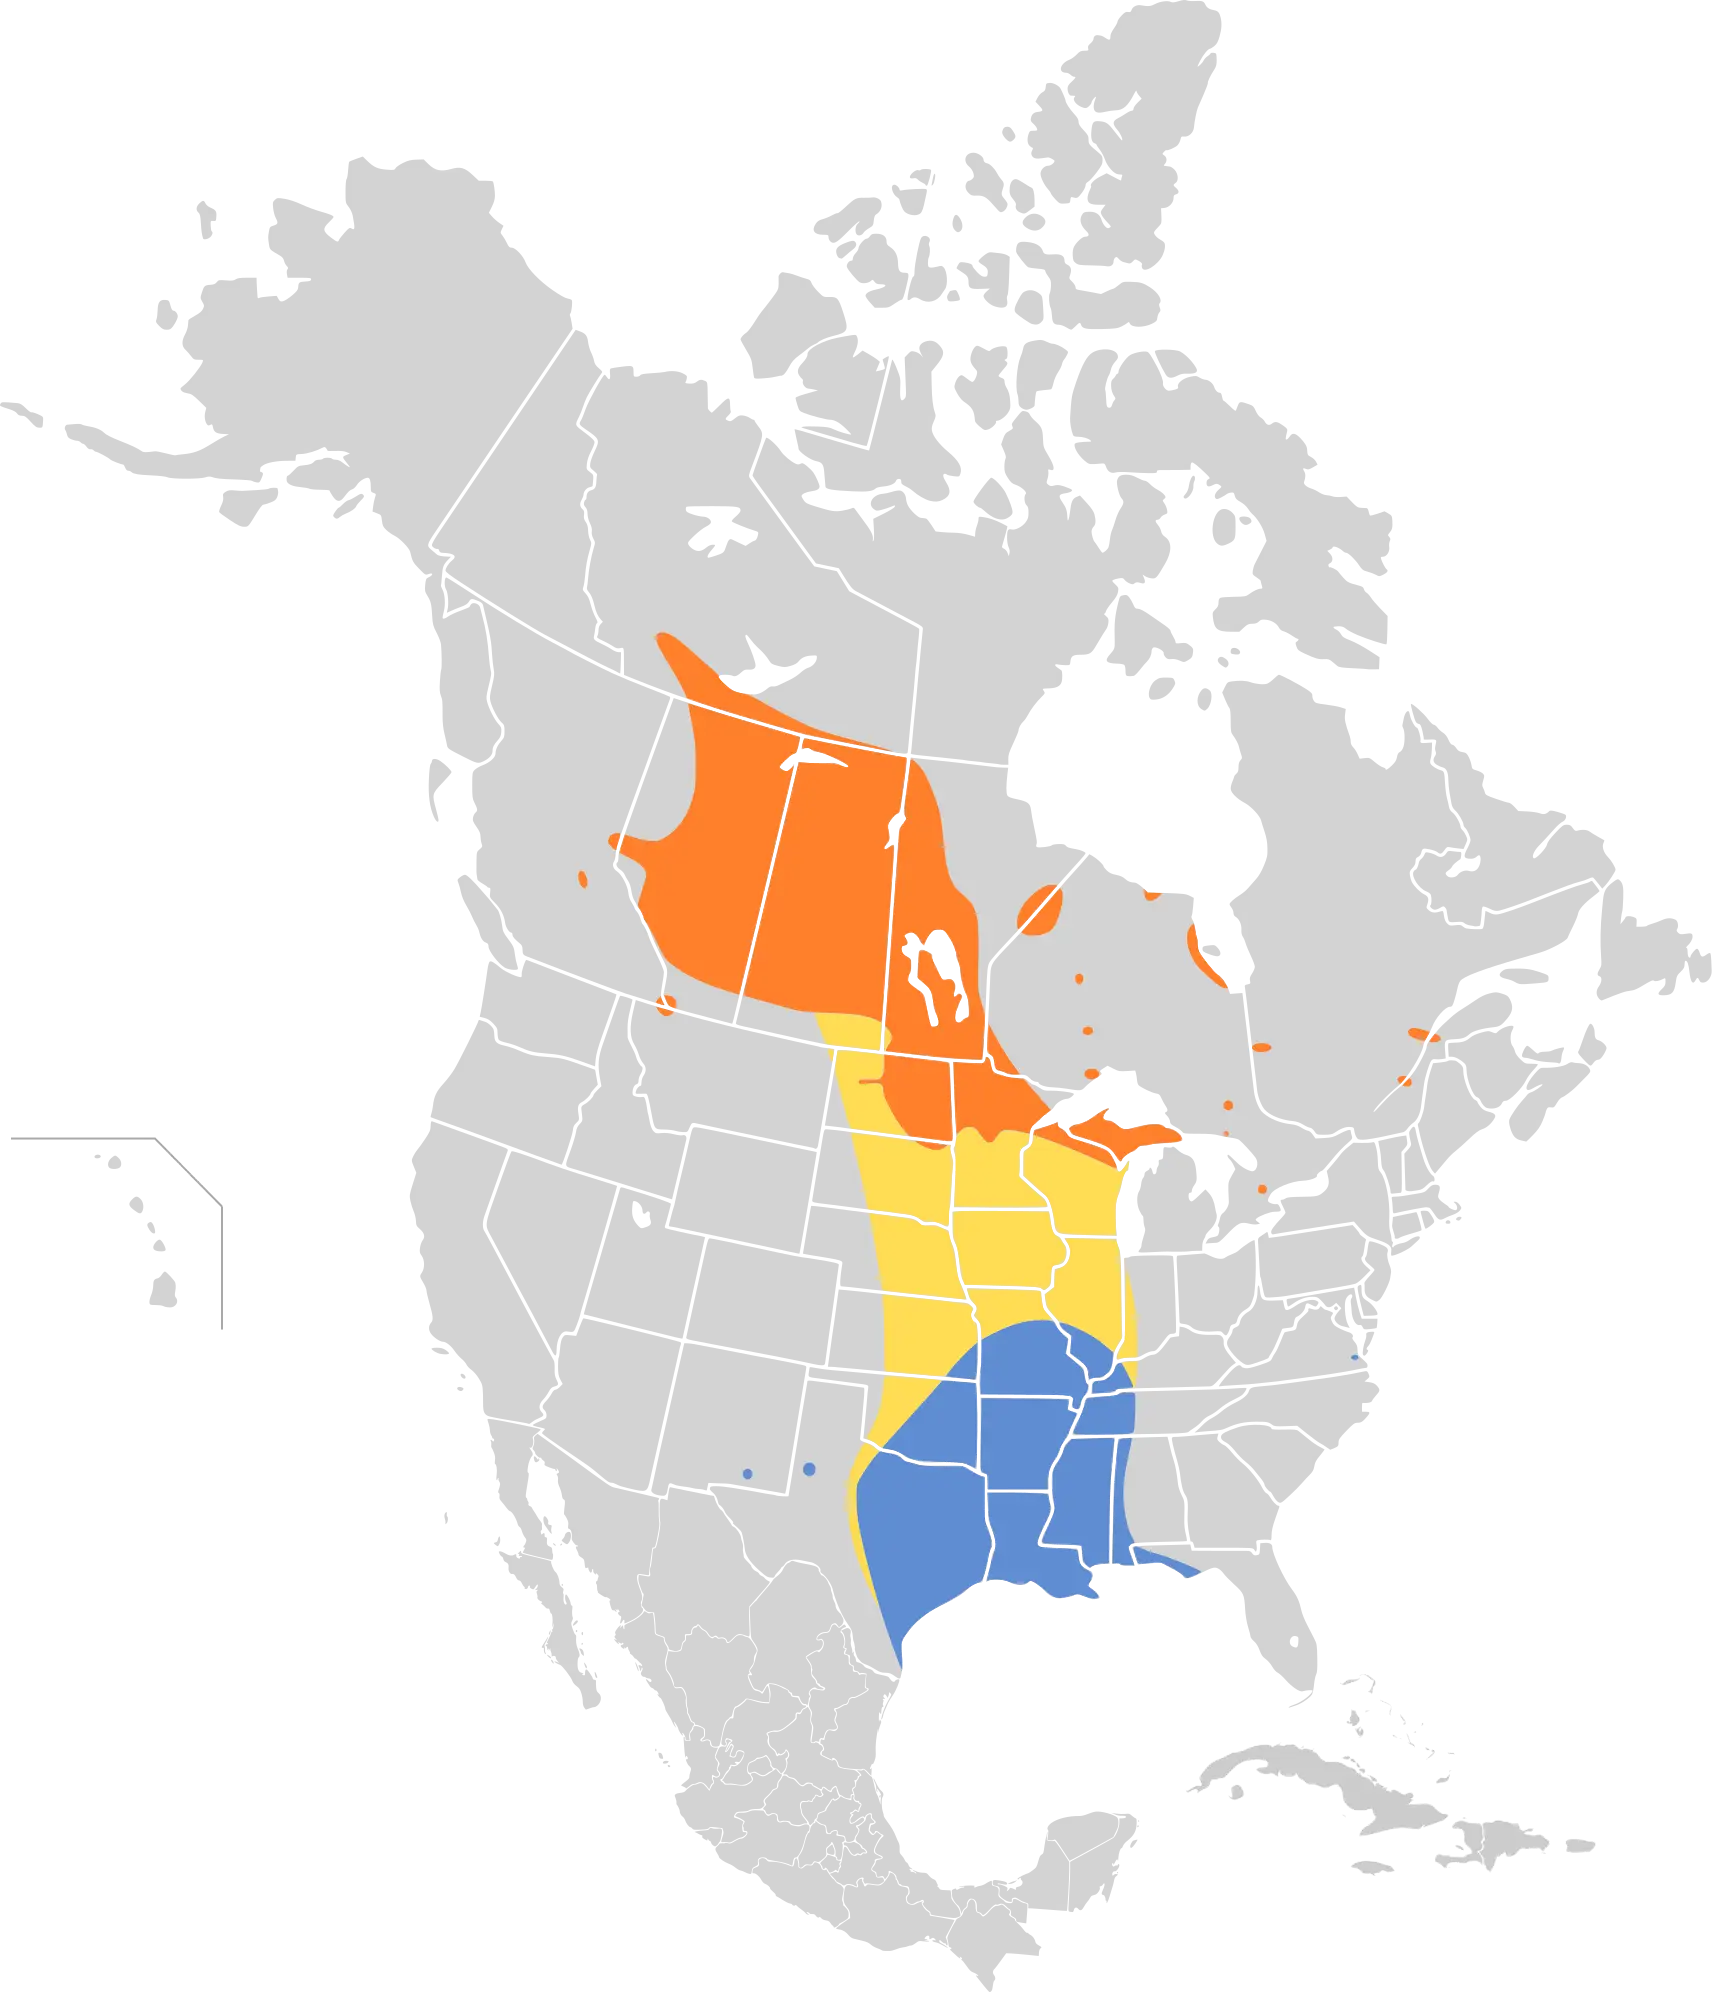 LeConte's sparrow habitat map